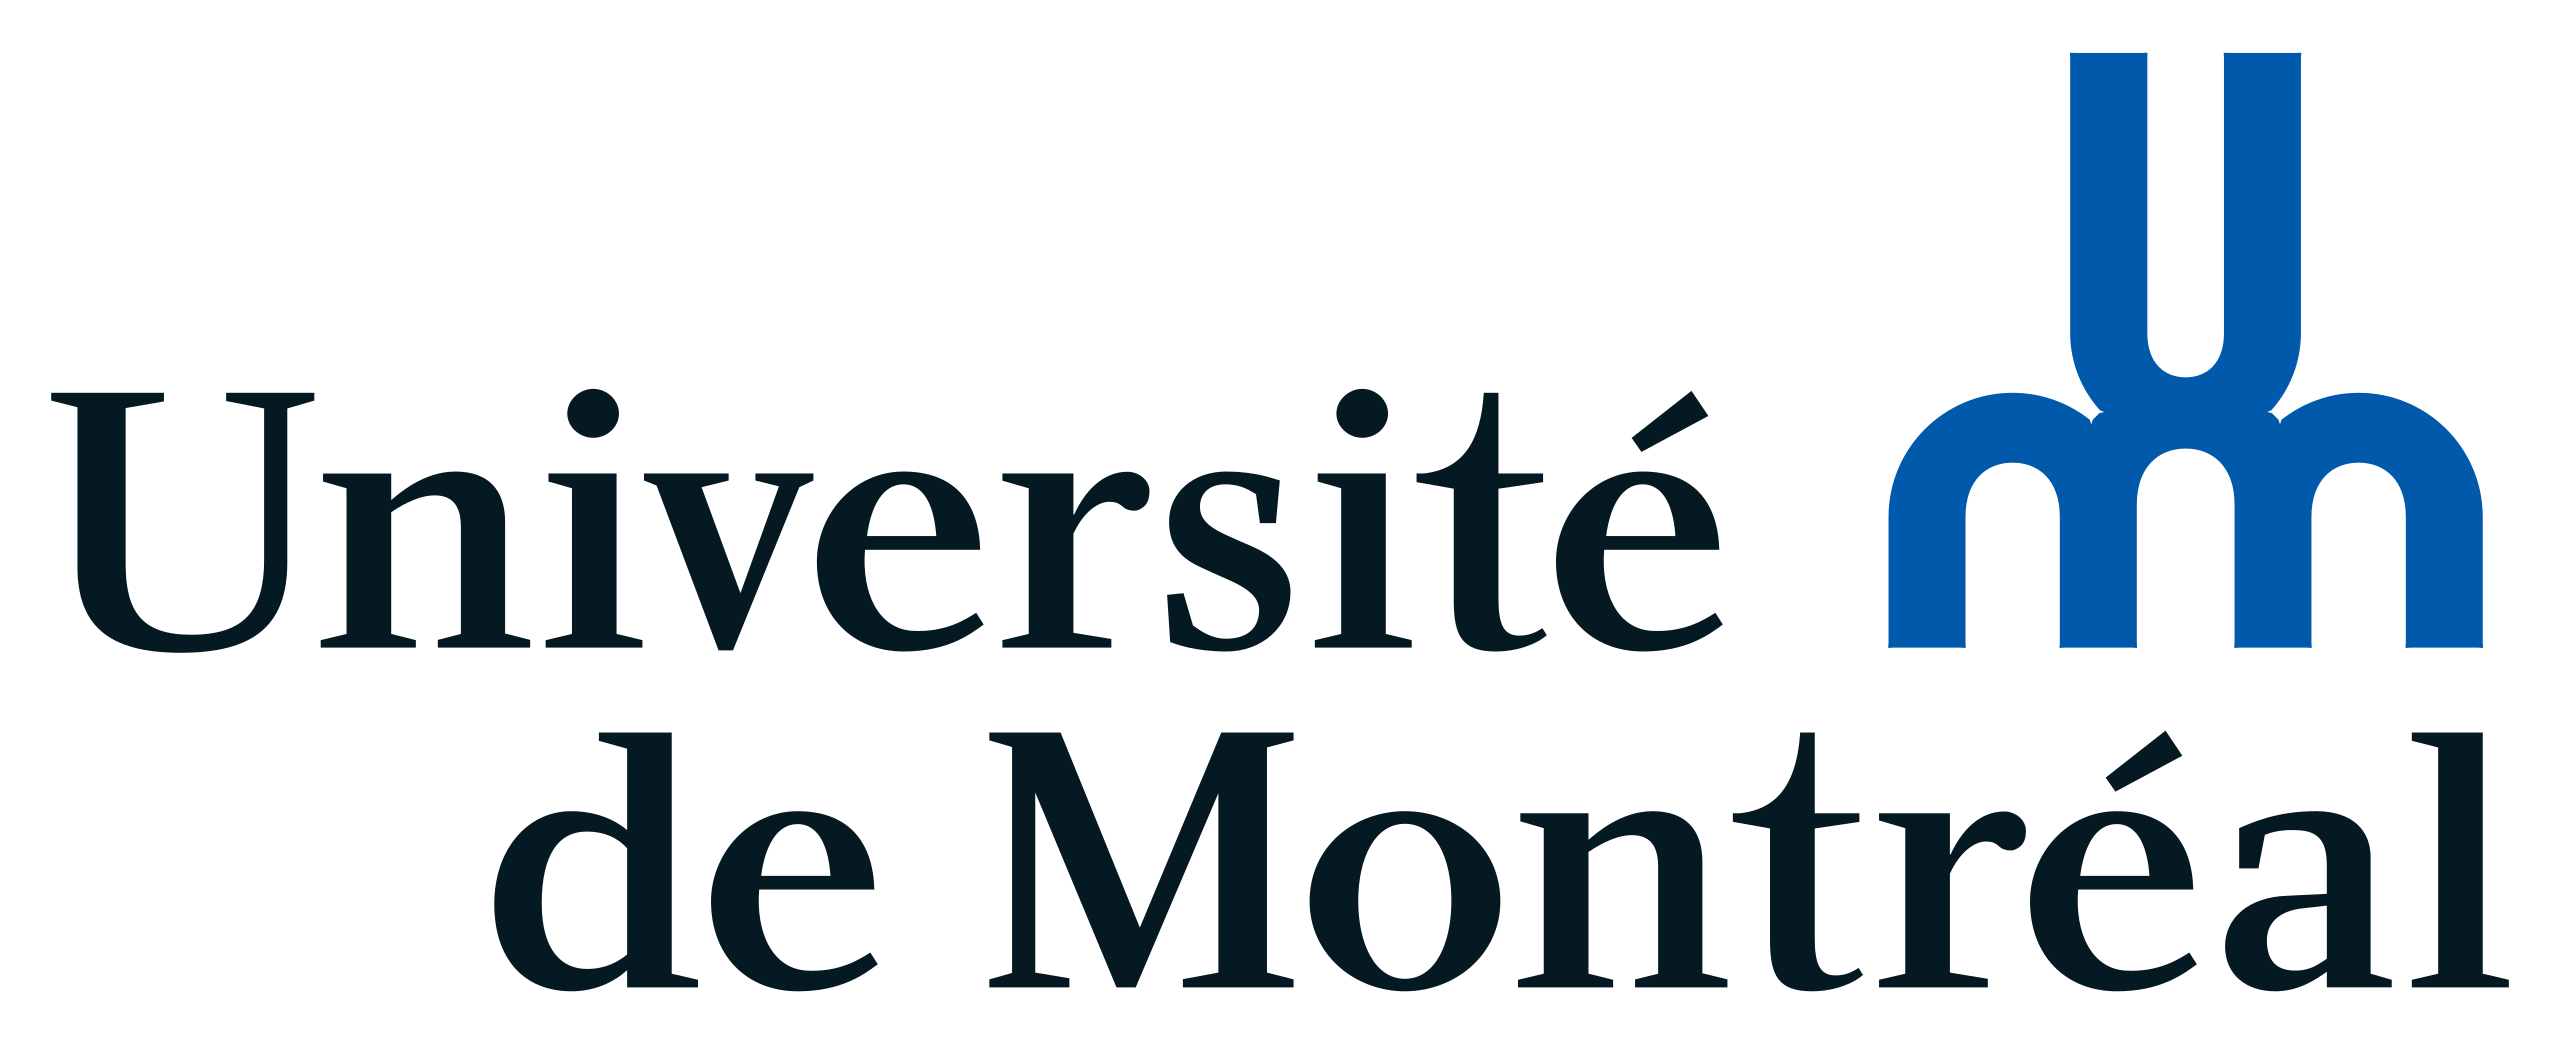 Université de Montreal